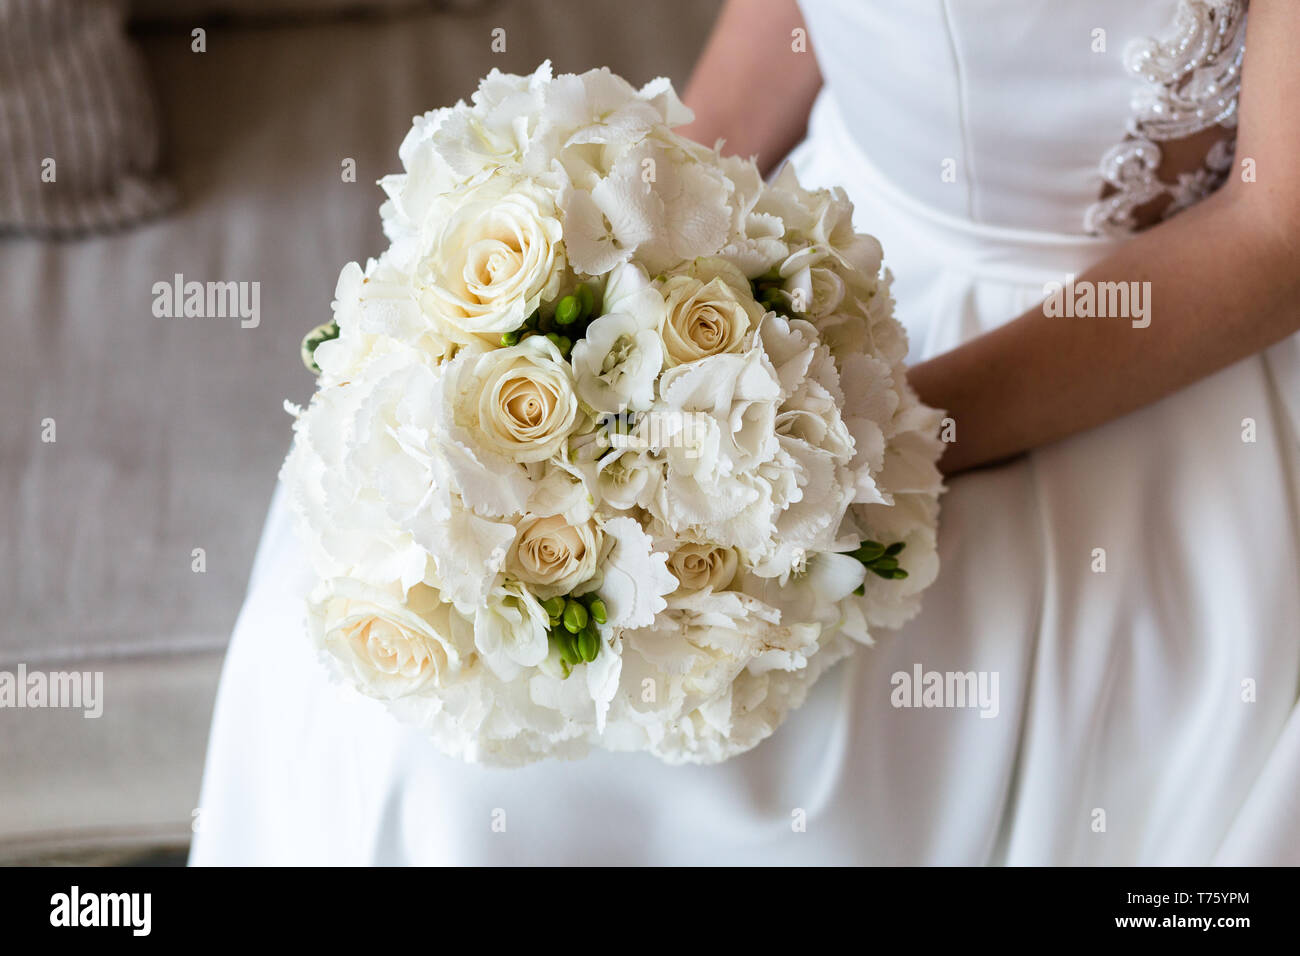 Exquisite Brautstrauß aus weissen Rosen, Hortensien und Freesien in den  Händen eines unkenntlich Braut Stockfotografie - Alamy